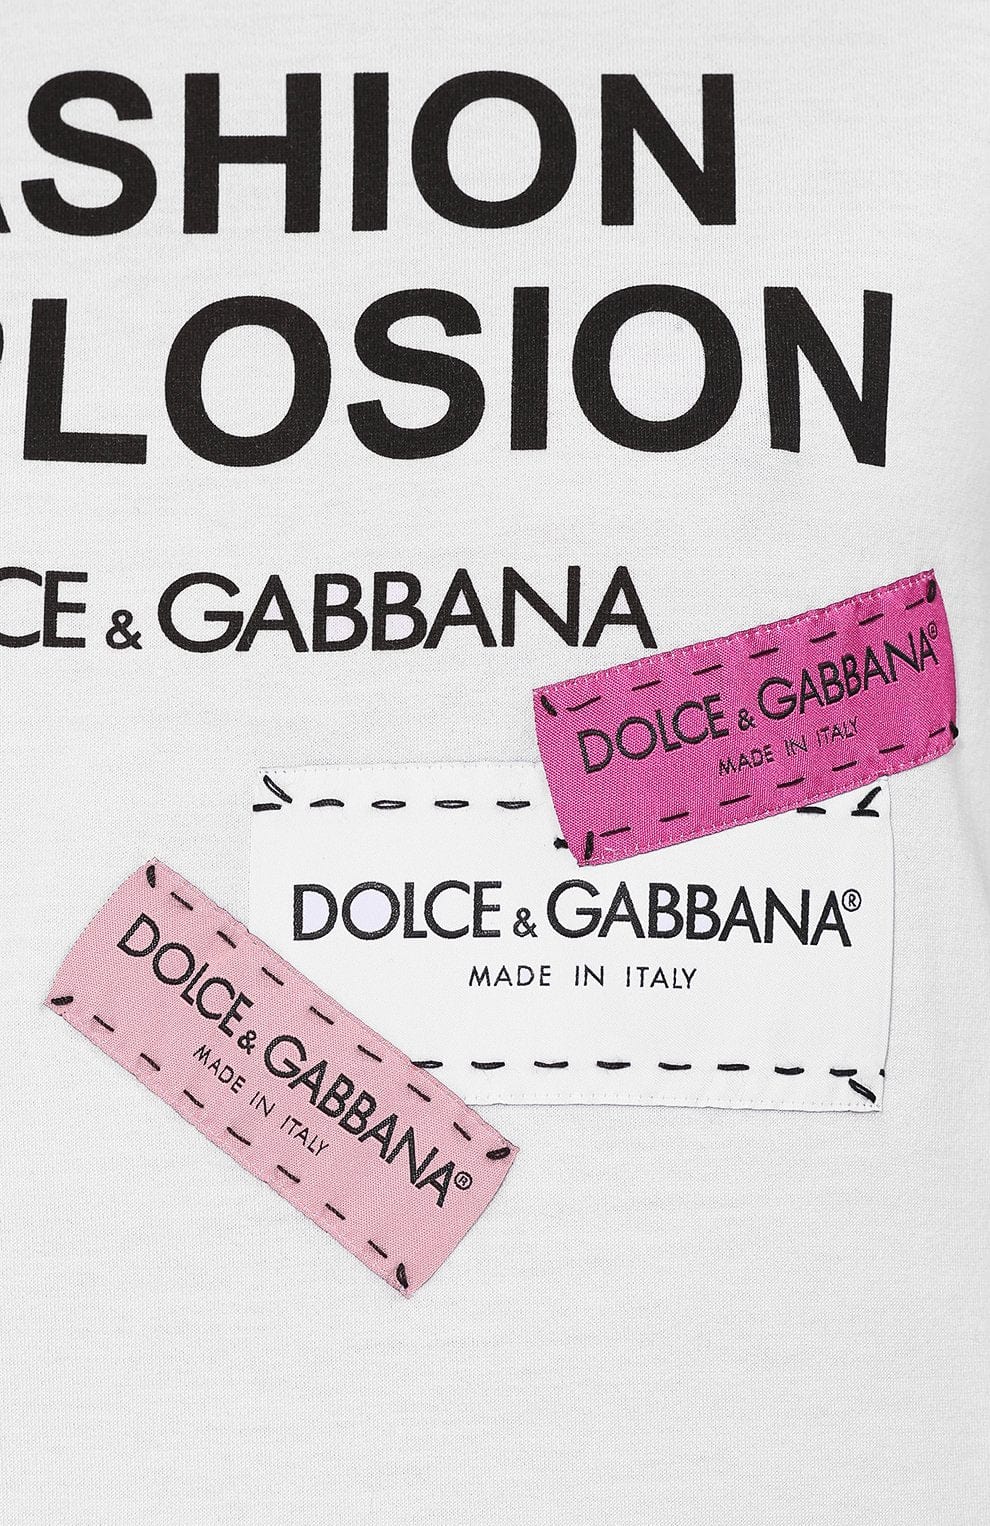 Dolce & Gabbana Fashion Explosion T-Shirt